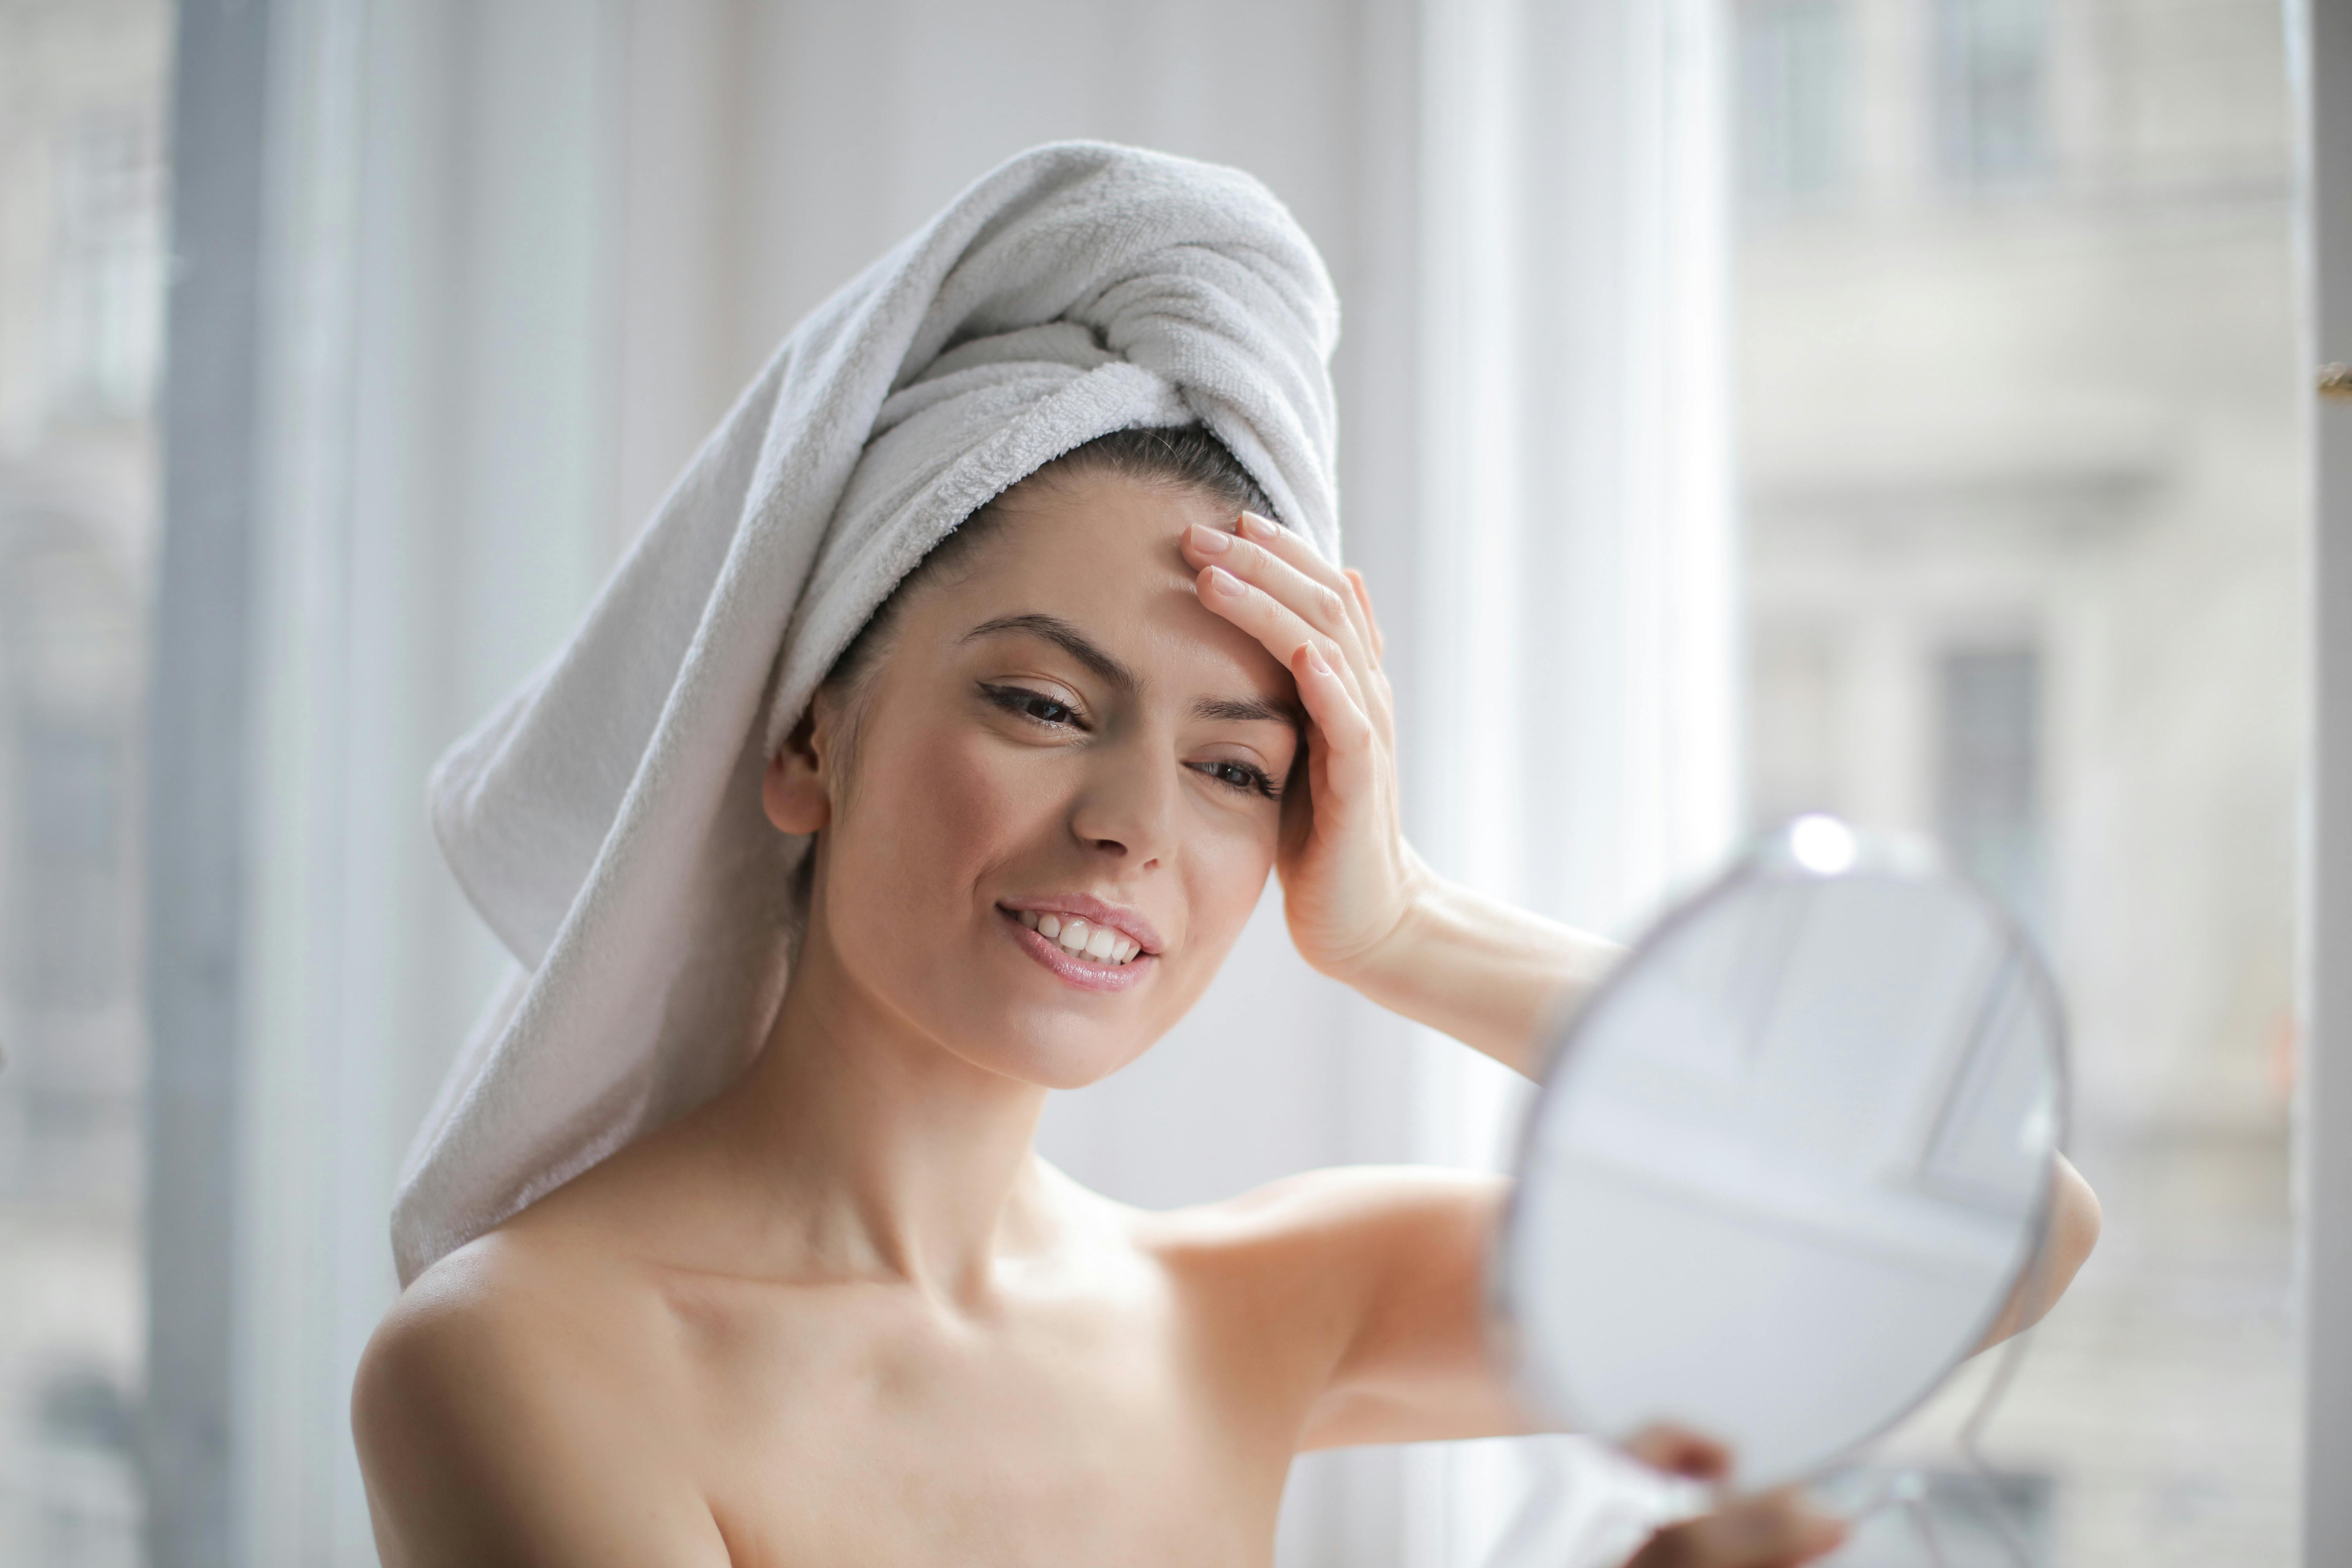 Una mujer feliz mirándose al espejo mientras se seca el pelo con una toalla | Fuente: Pexels